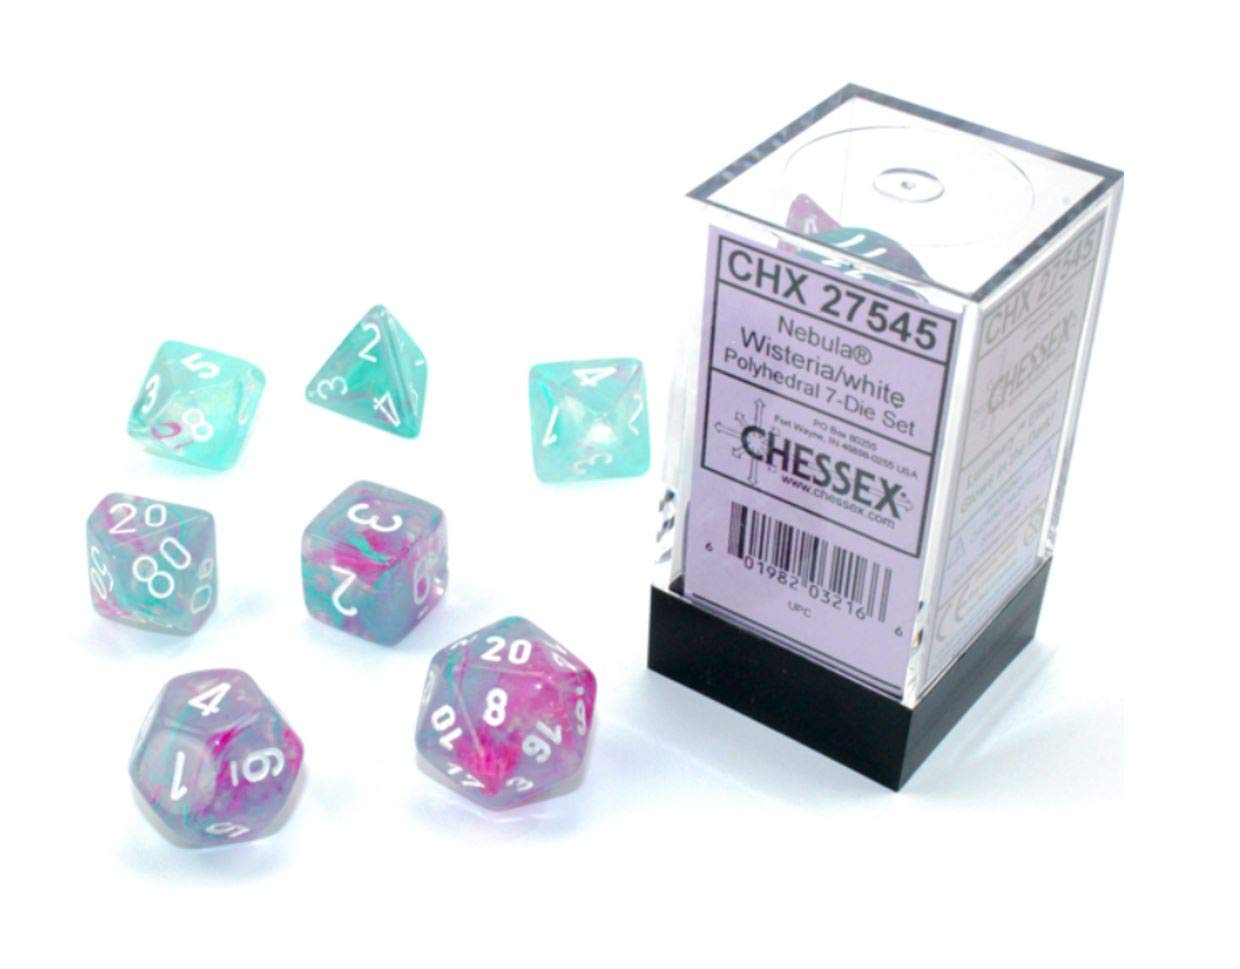 CHESSEX NEBULA POLYHEDRAL 7-DIE SET - Explore the Cosmic Depths of Your Imagination!, Chessex, Dice & Counters, chessex-nebula-polyhedral-7-die-set, Chessex, CHX, Dice, Die, Die Set, Dark Ninja Gaming LA